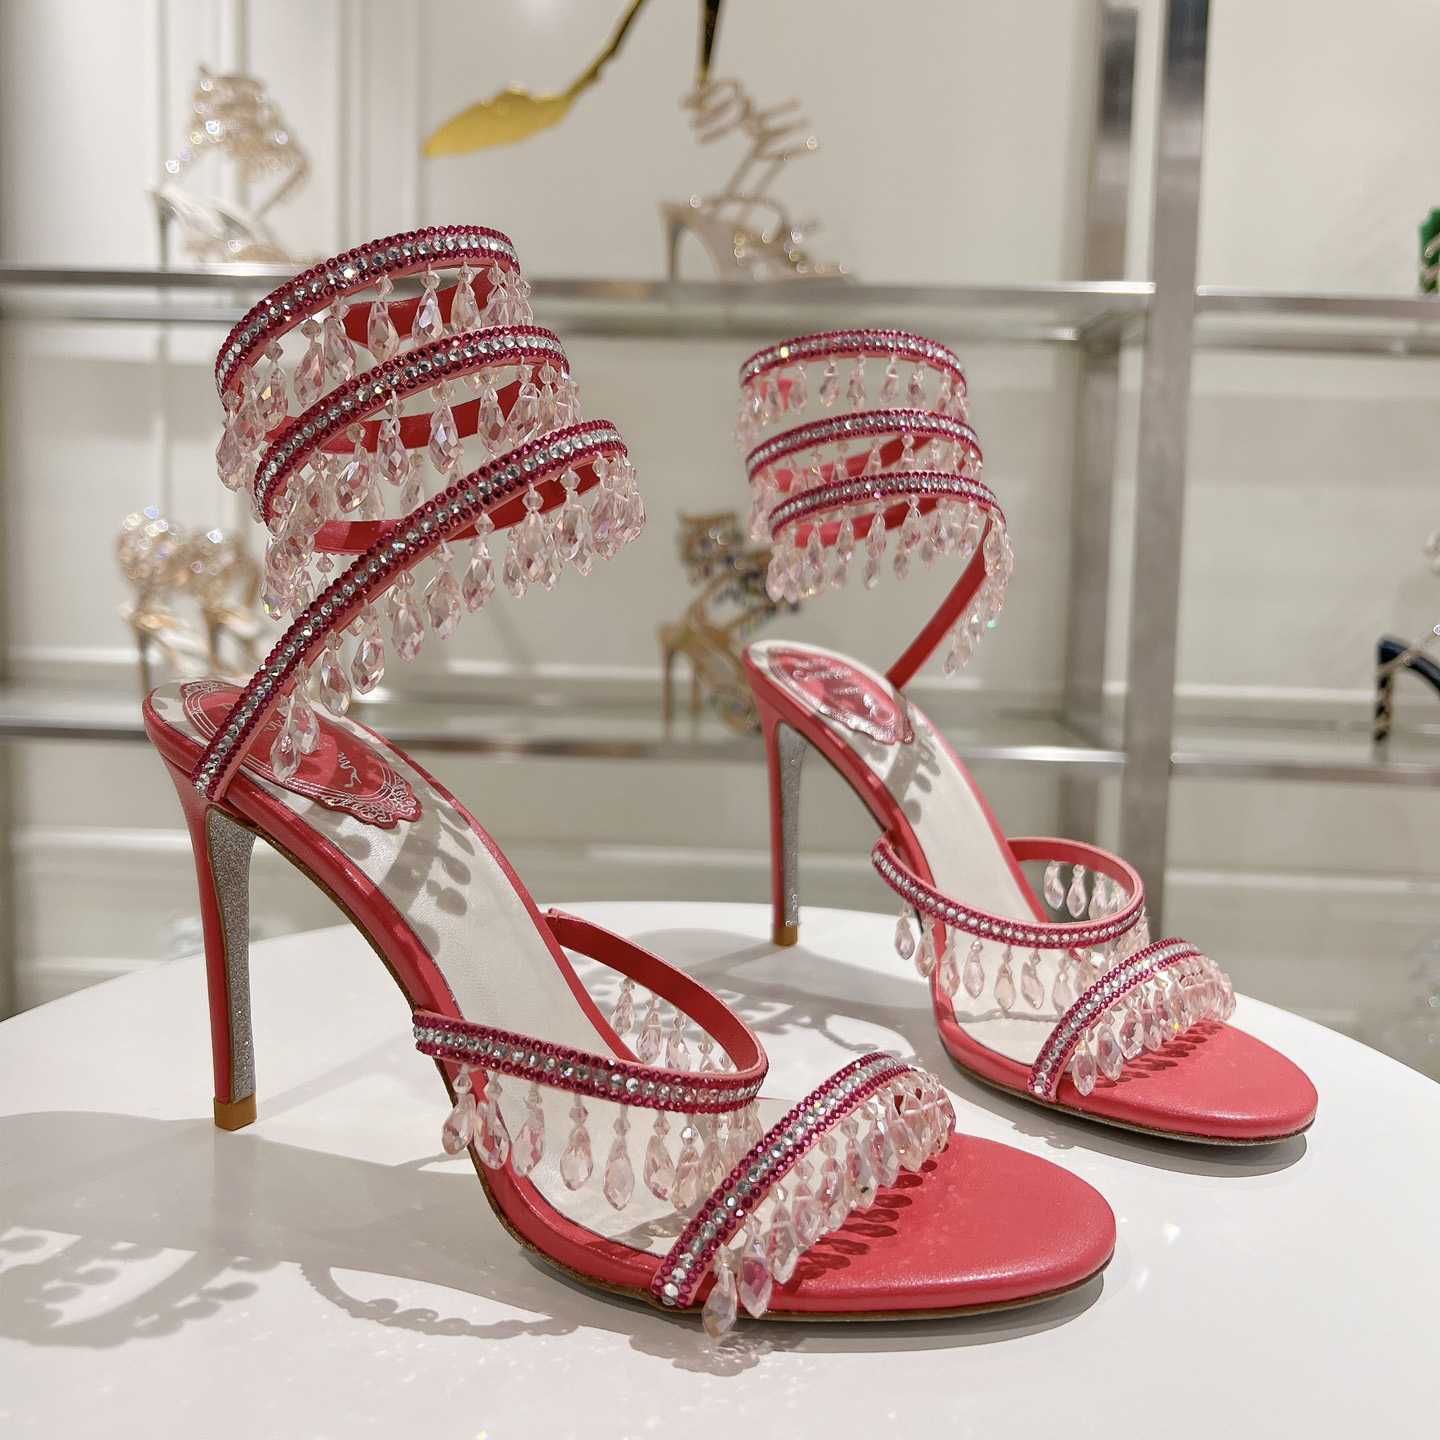 Rene Caovilla Chandelier 95mm Crystal-embellished Sandals - DesignerGu